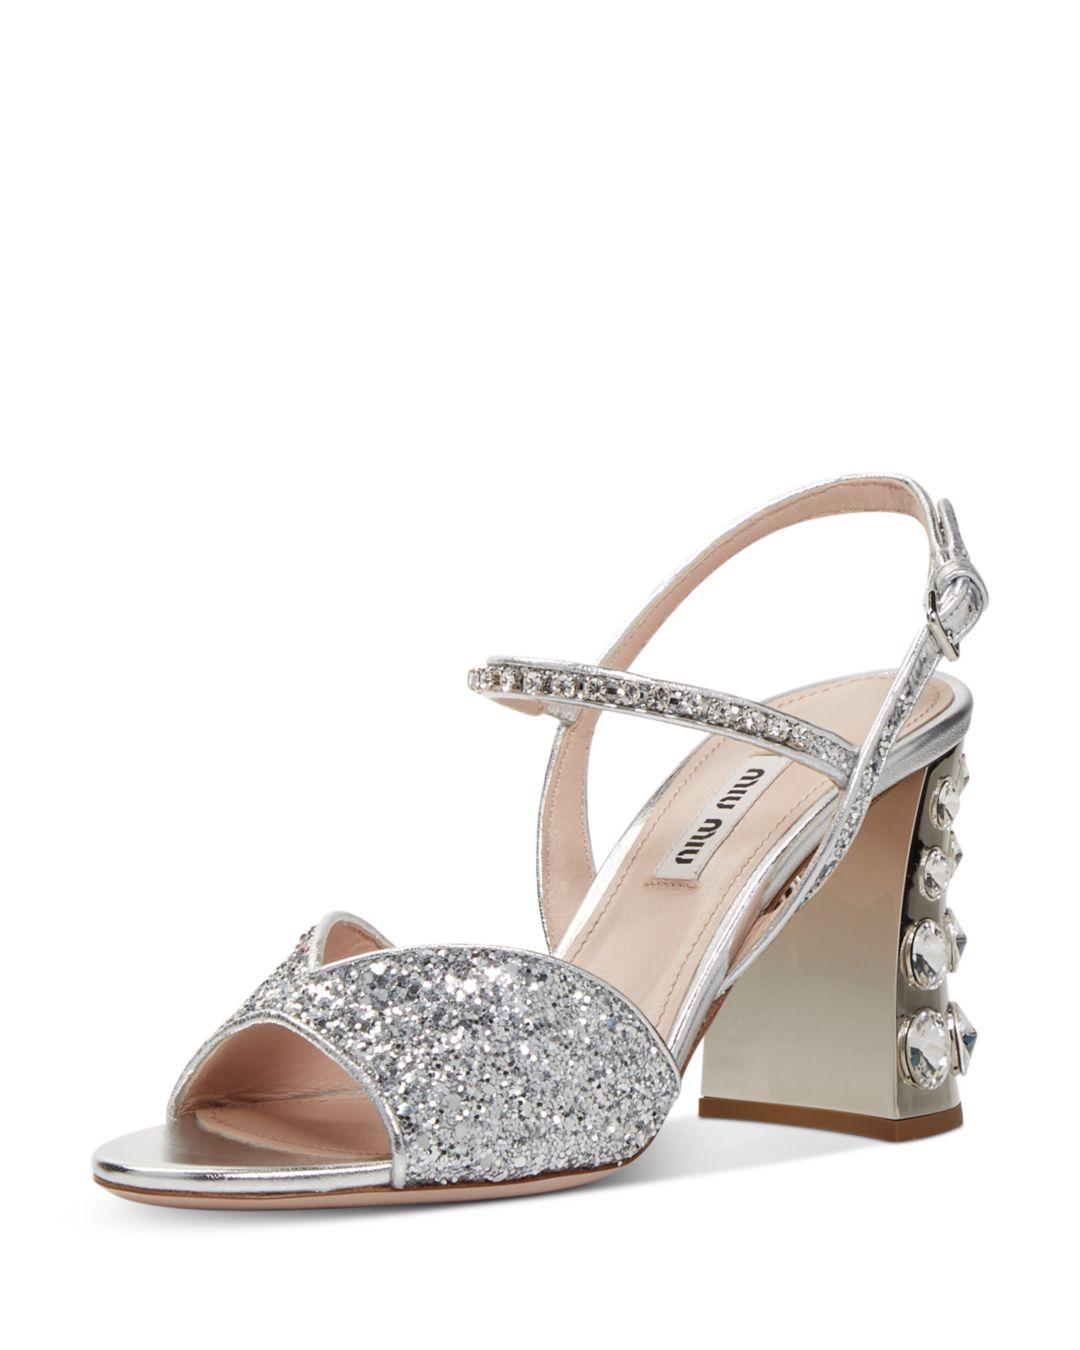 Miu Miu Glitter Crystal Embellished Block Heel Sandals | Lyst